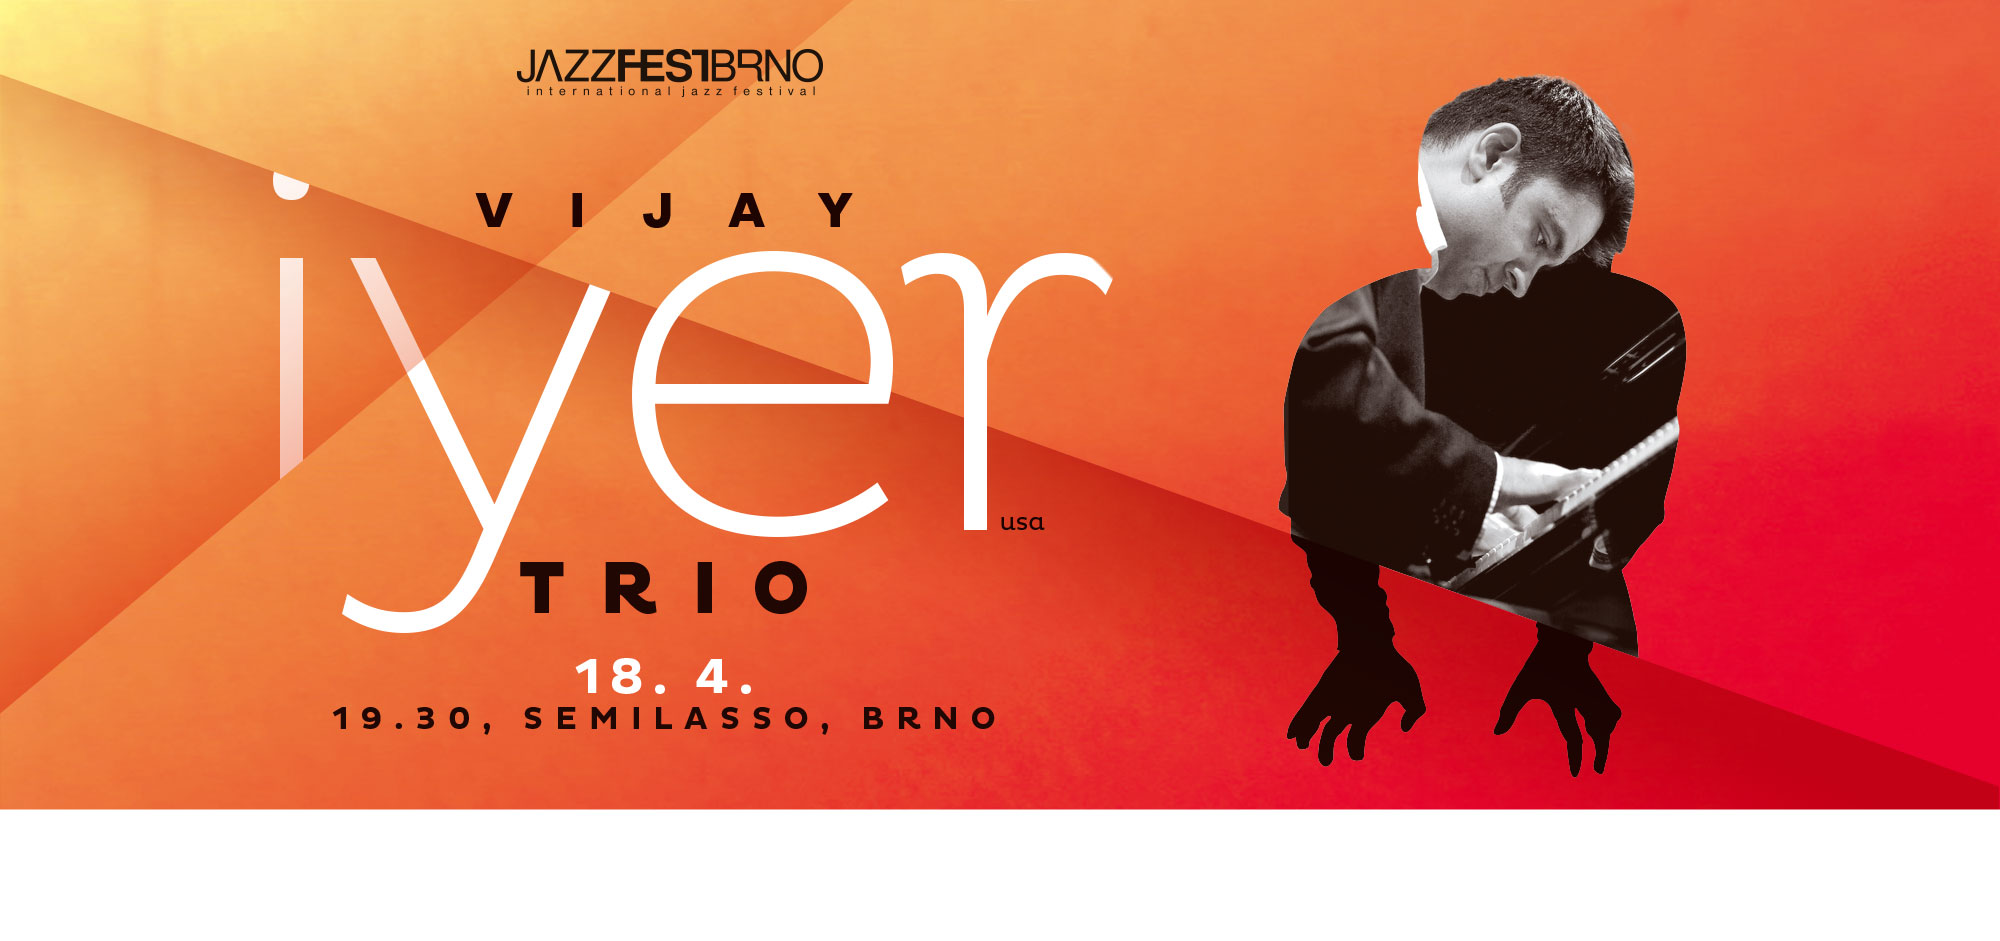 JazzFestBrno 2012 – Vijay Iyer